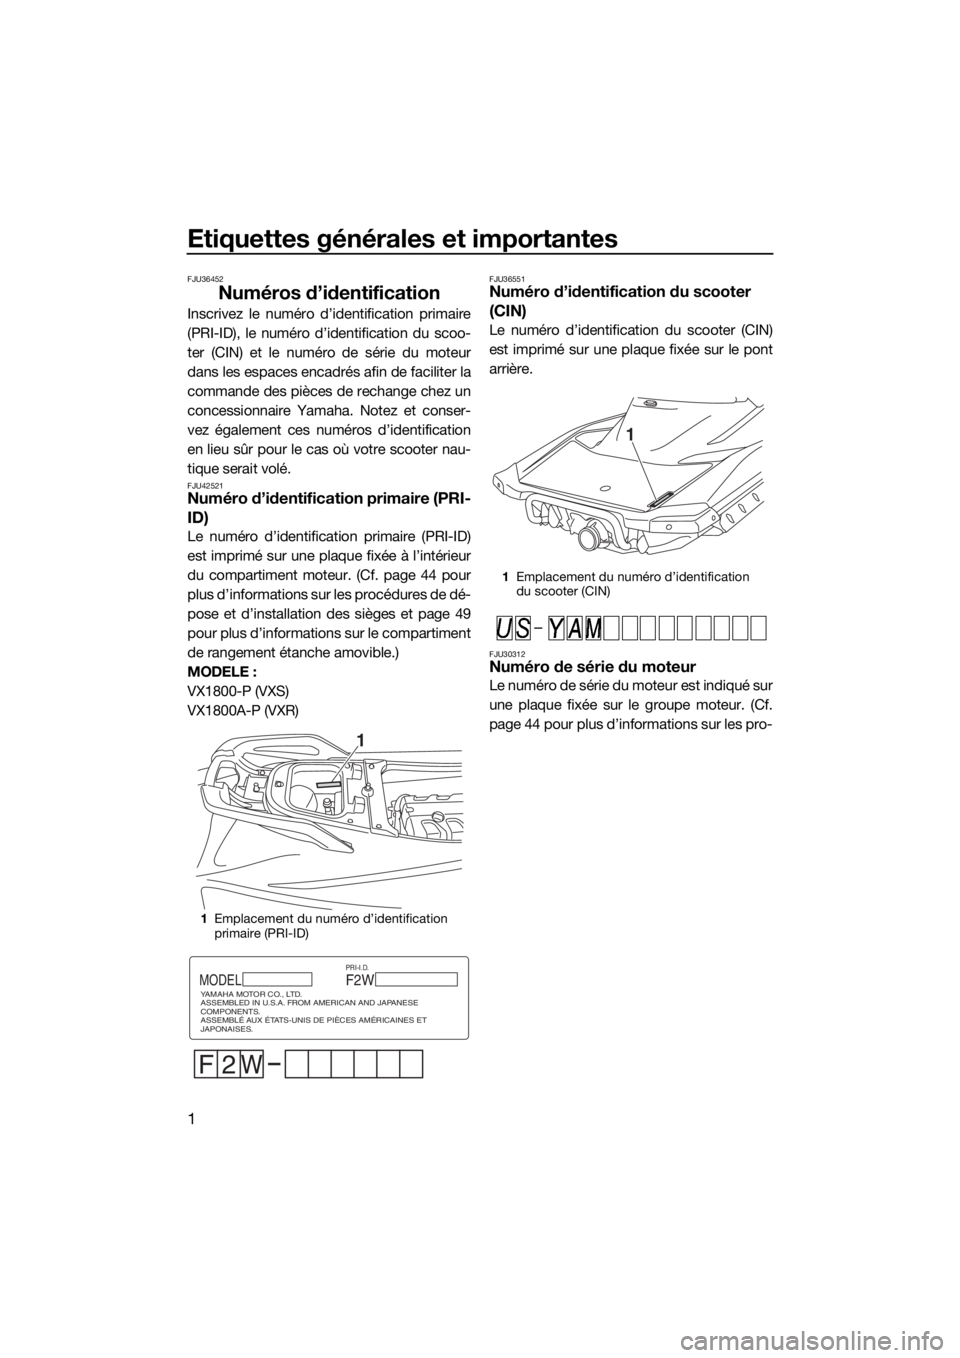 YAMAHA VXR 2015  Notices Demploi (in French) Etiquettes générales et importantes
1
FJU36452
Numéros d’identification
Inscrivez le numéro d’identification primaire
(PRI-ID), le numéro d’identification du scoo-
ter (CIN) et le numéro d